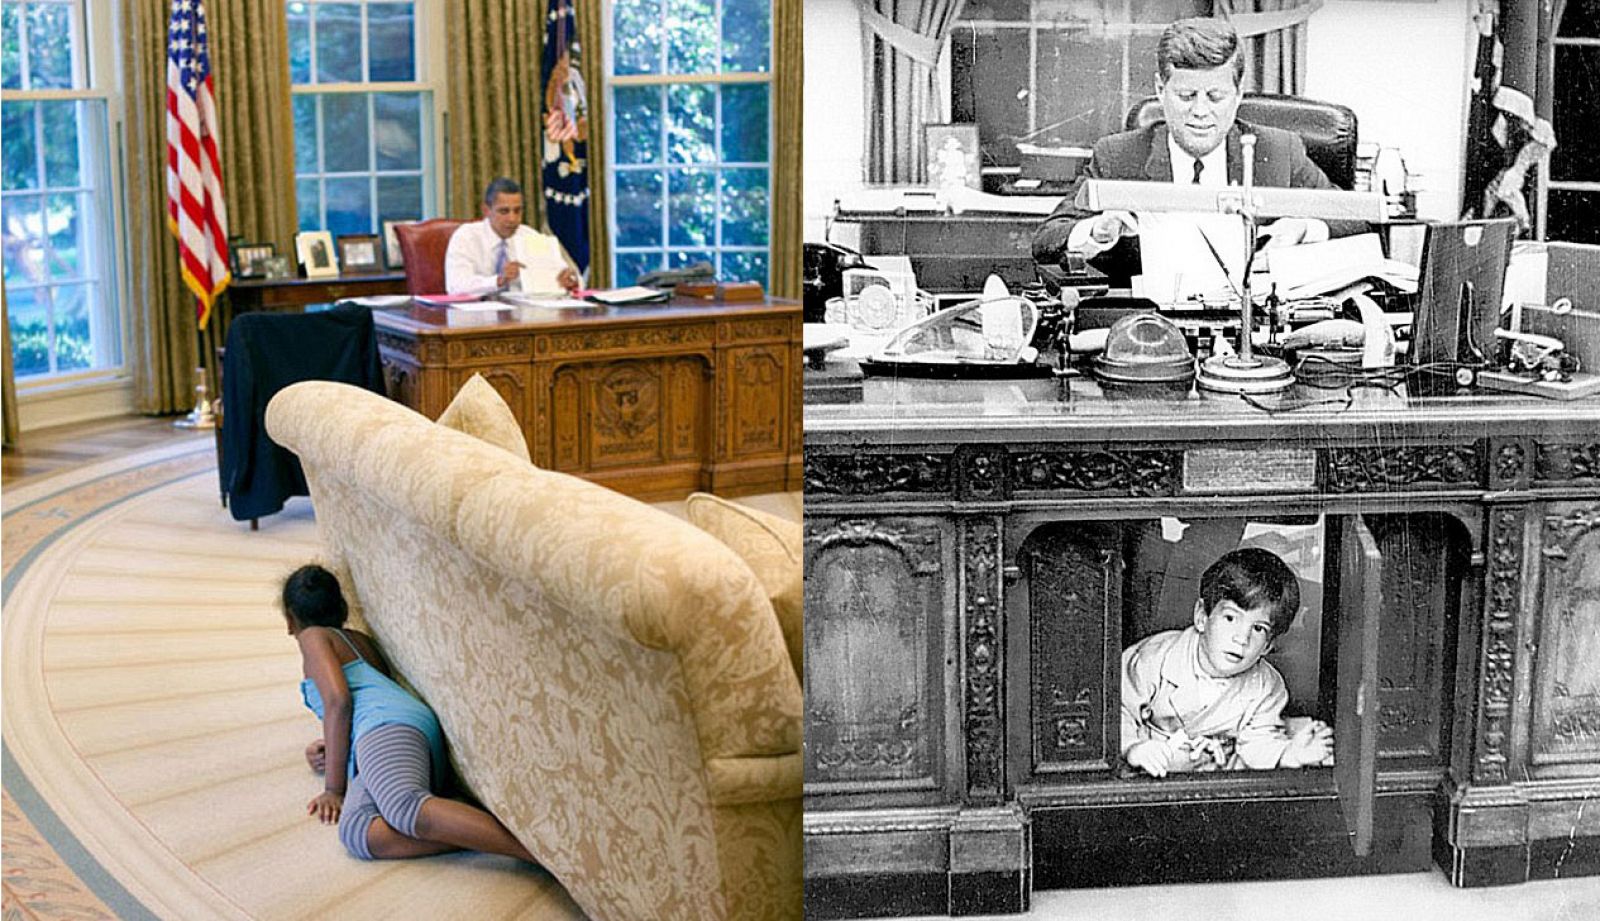 La Casa Blanca distribuye una foto de la hija pequeña de Obama que recuerda a la instantánea de John F. Kennedy Jr. jugando bajo el escritorio de su padre en 1963.